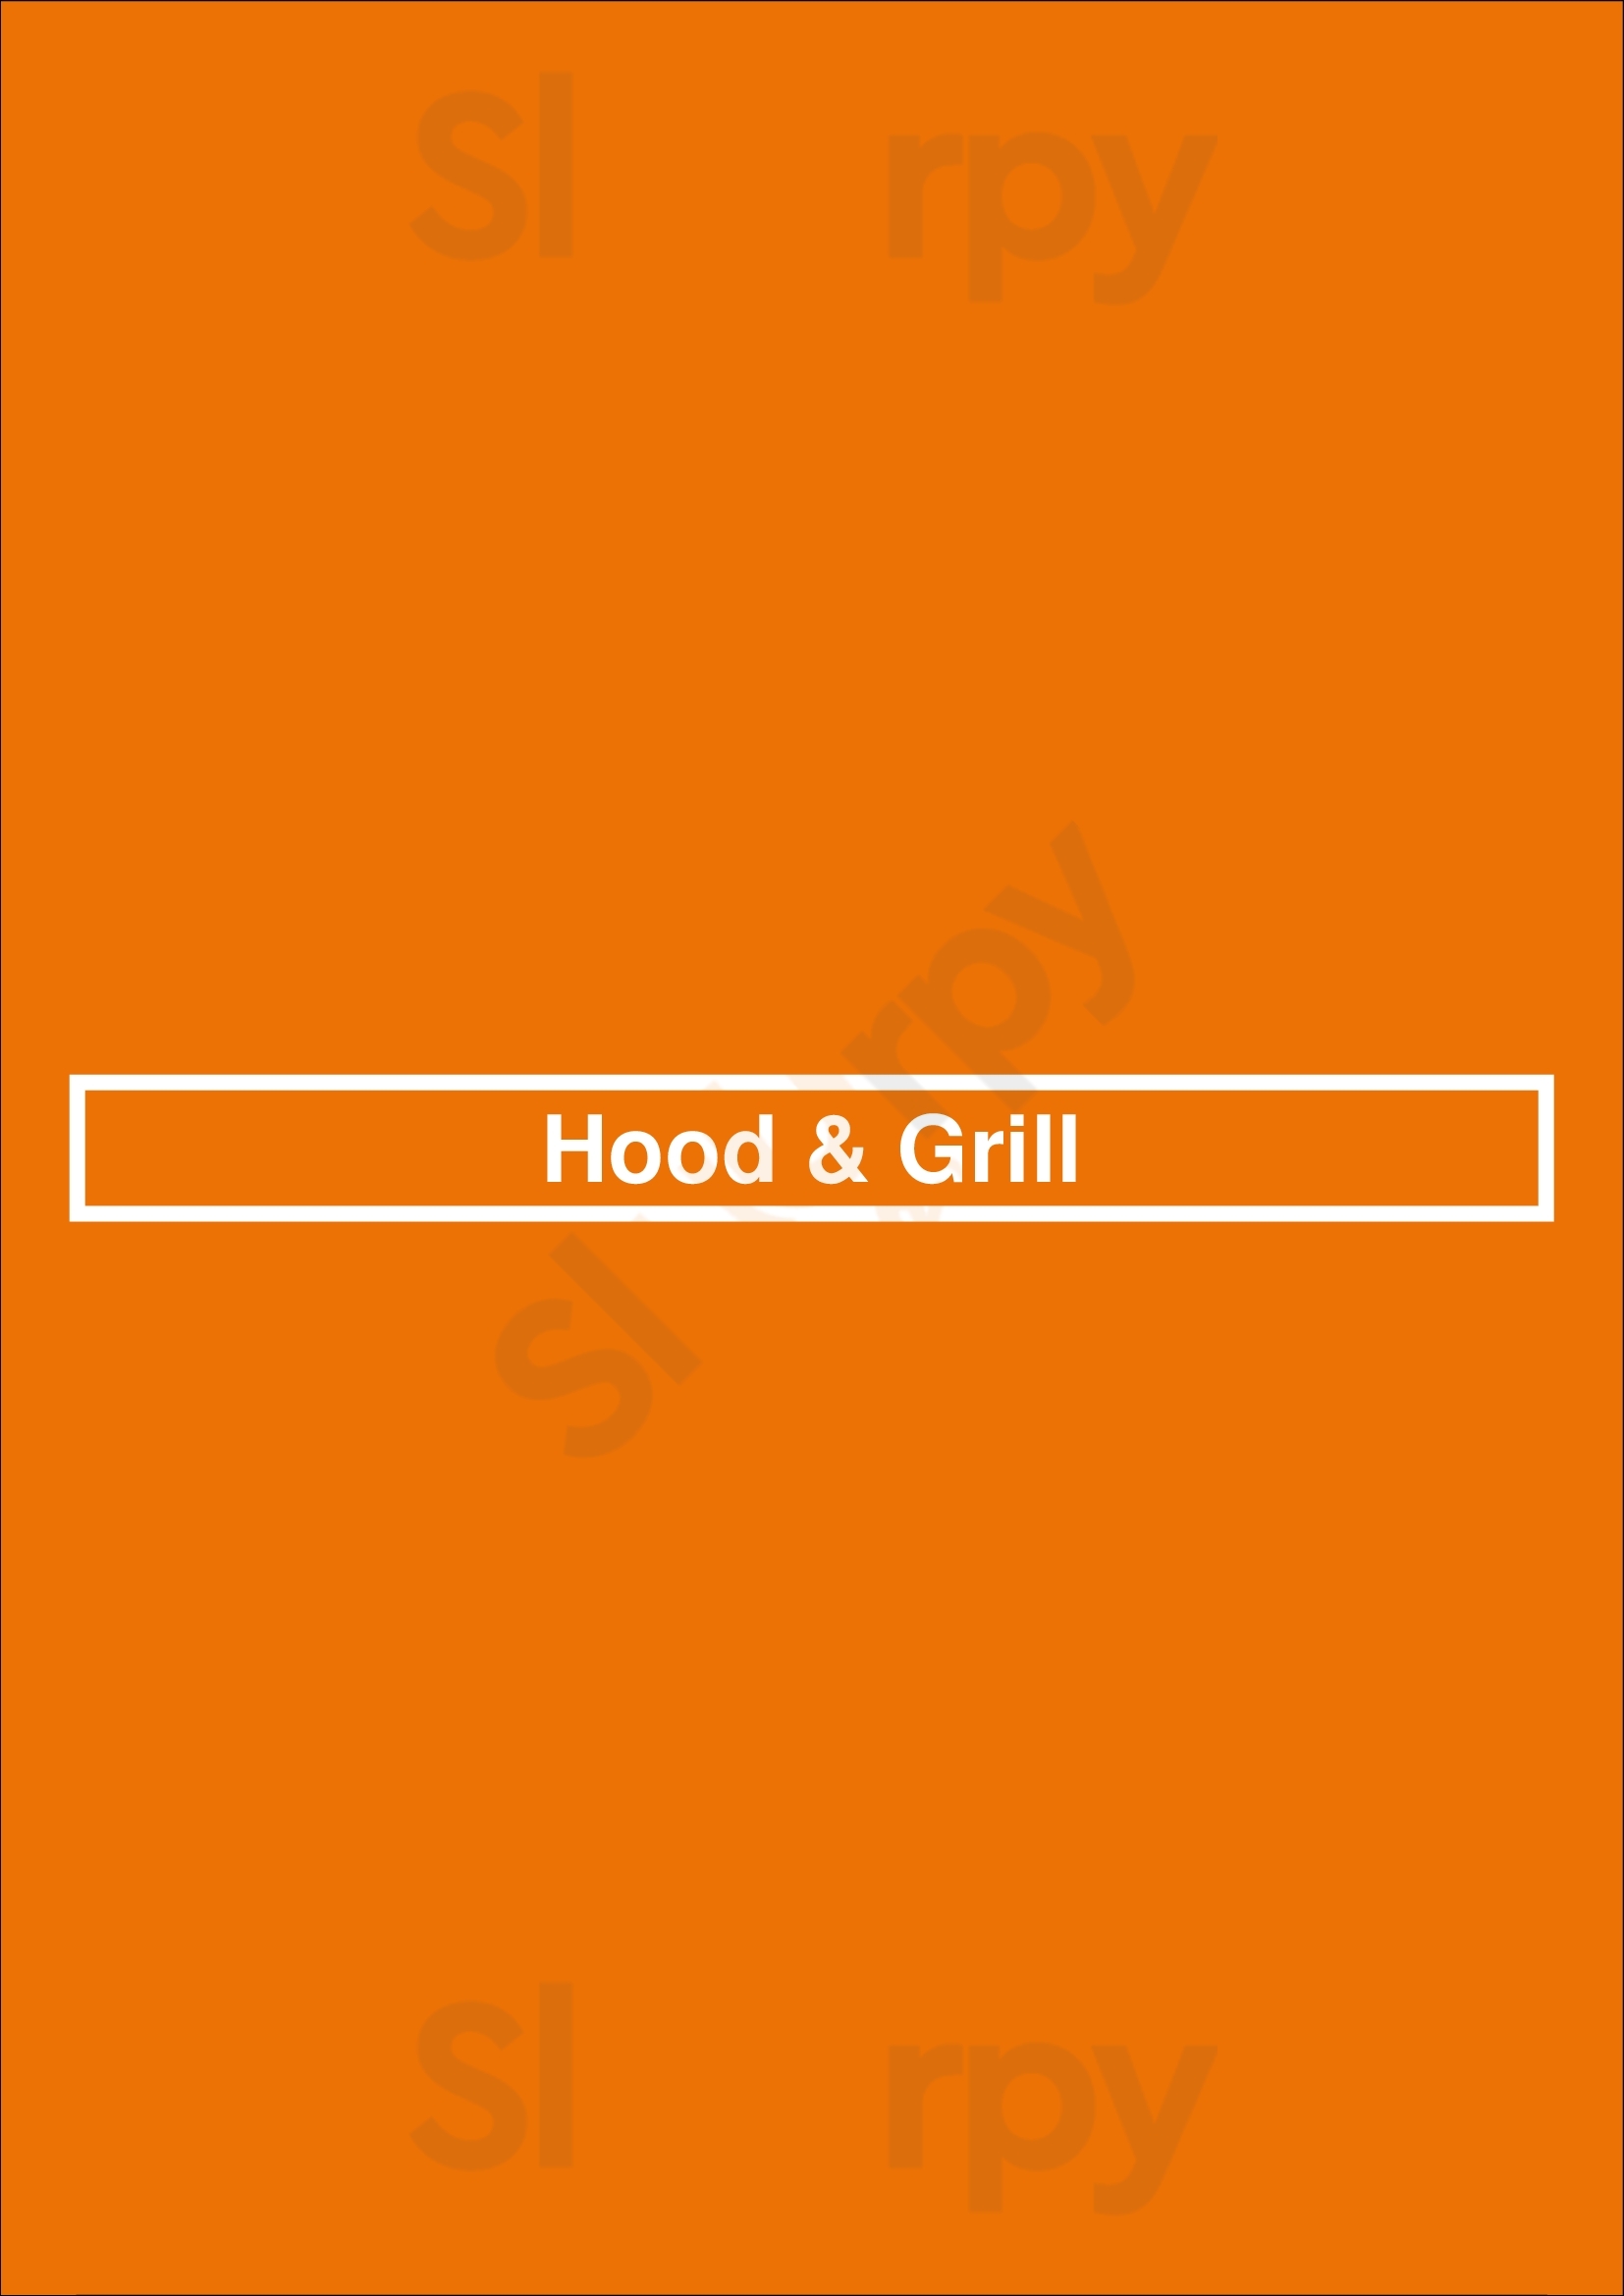 Hood & Grill Milton Menu - 1